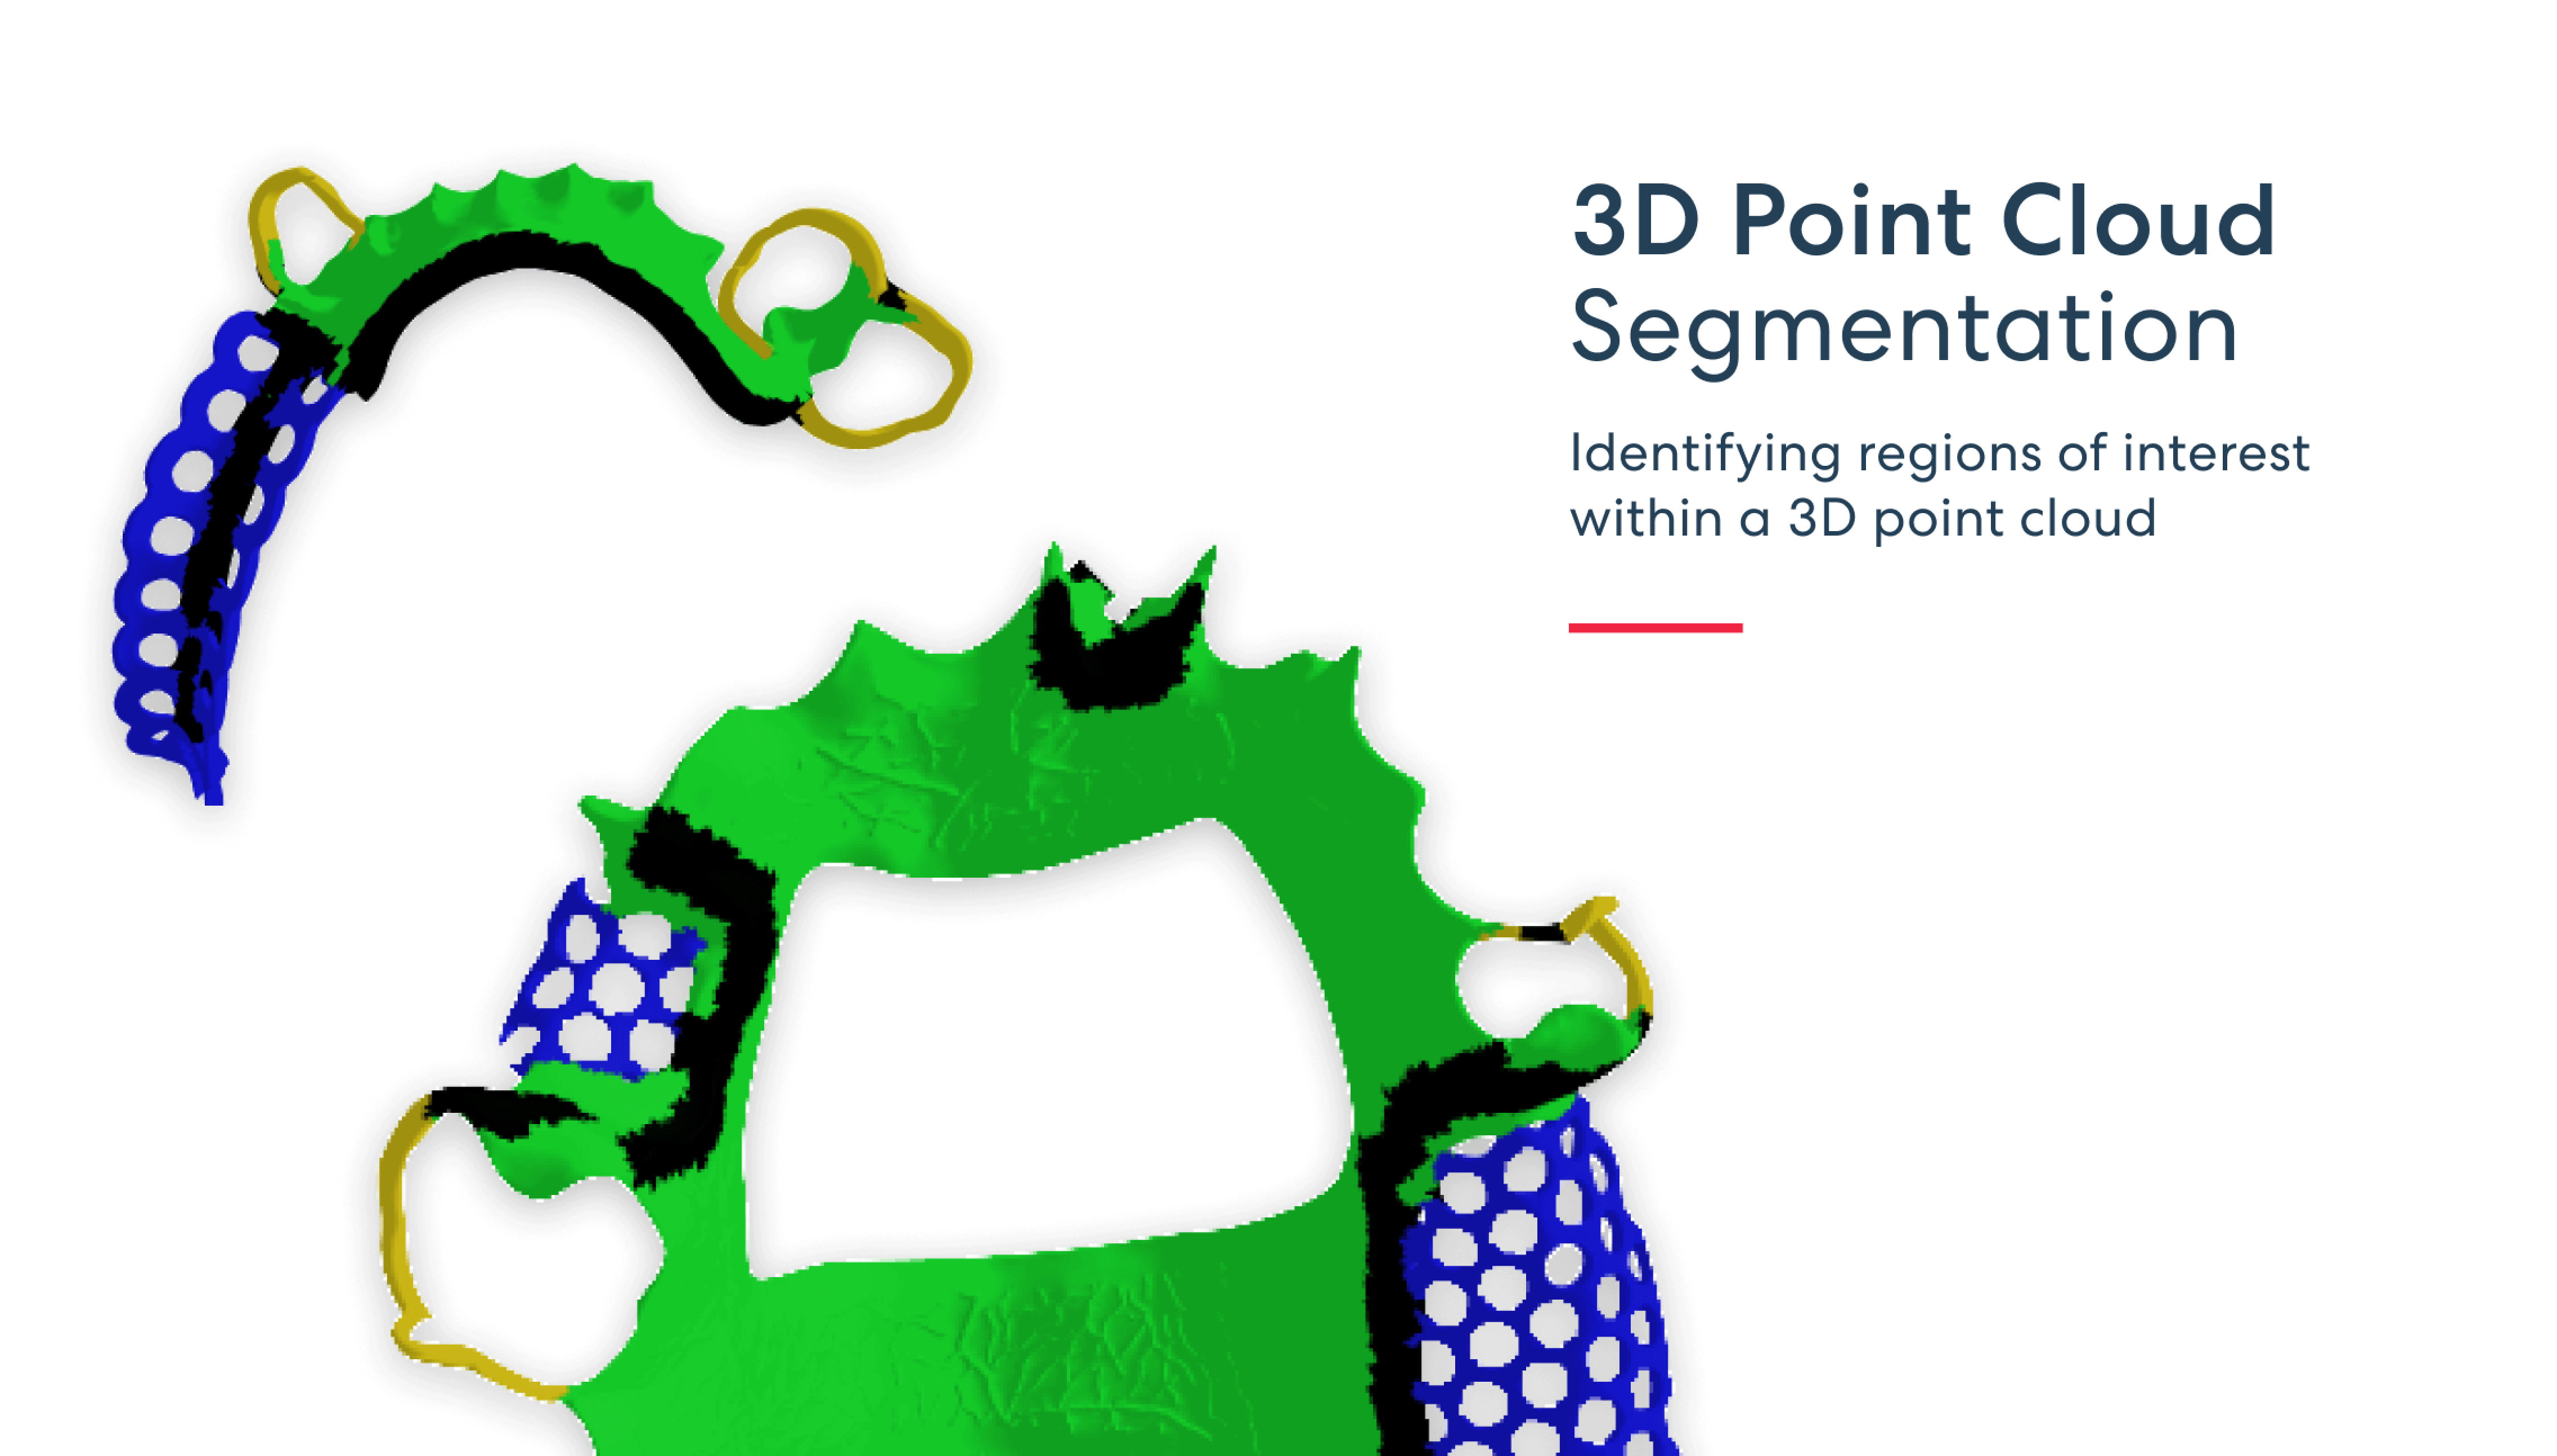 3D 点云分割 - 识别 3D 点云中的感兴趣区域